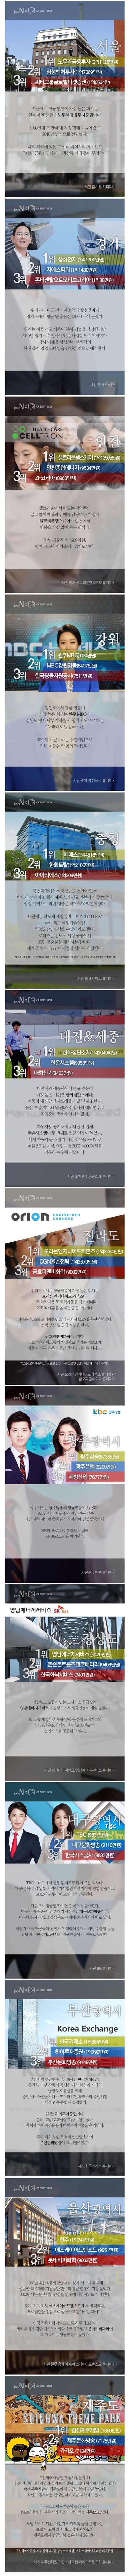 지역별 연봉 TOP3 기업